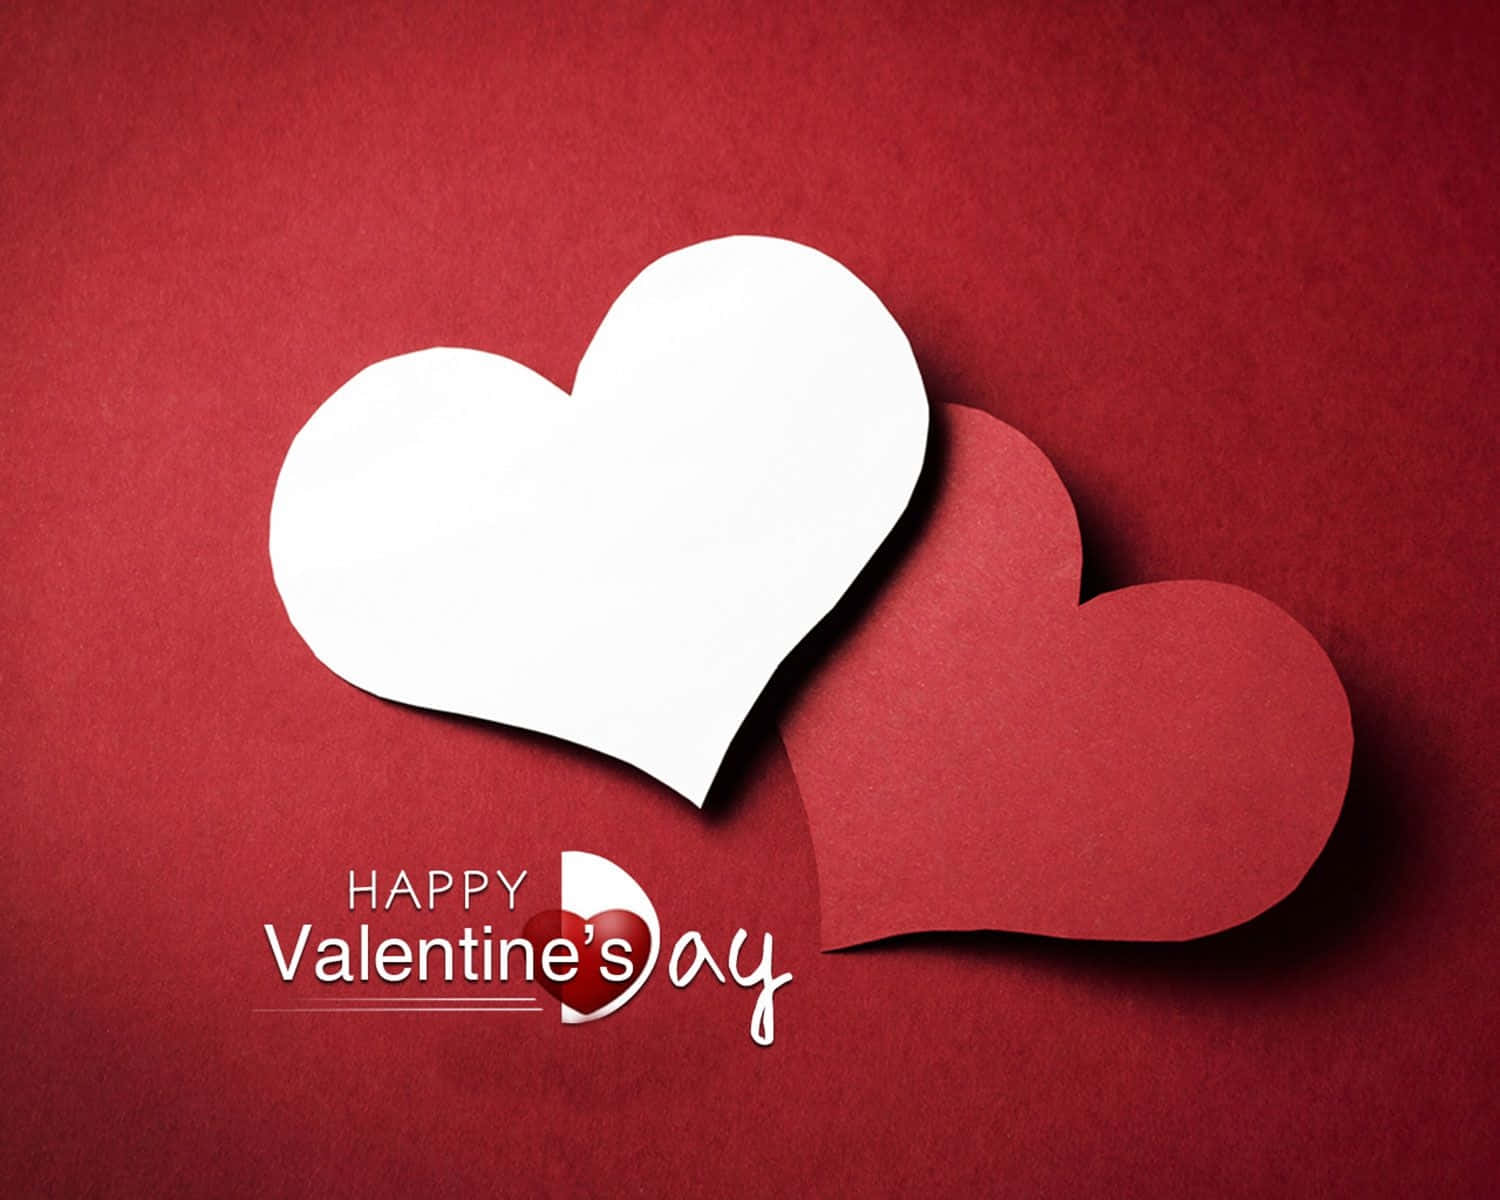 Vis din kærlighed denne Valentinsdag med rosenrøde hjerter. Wallpaper